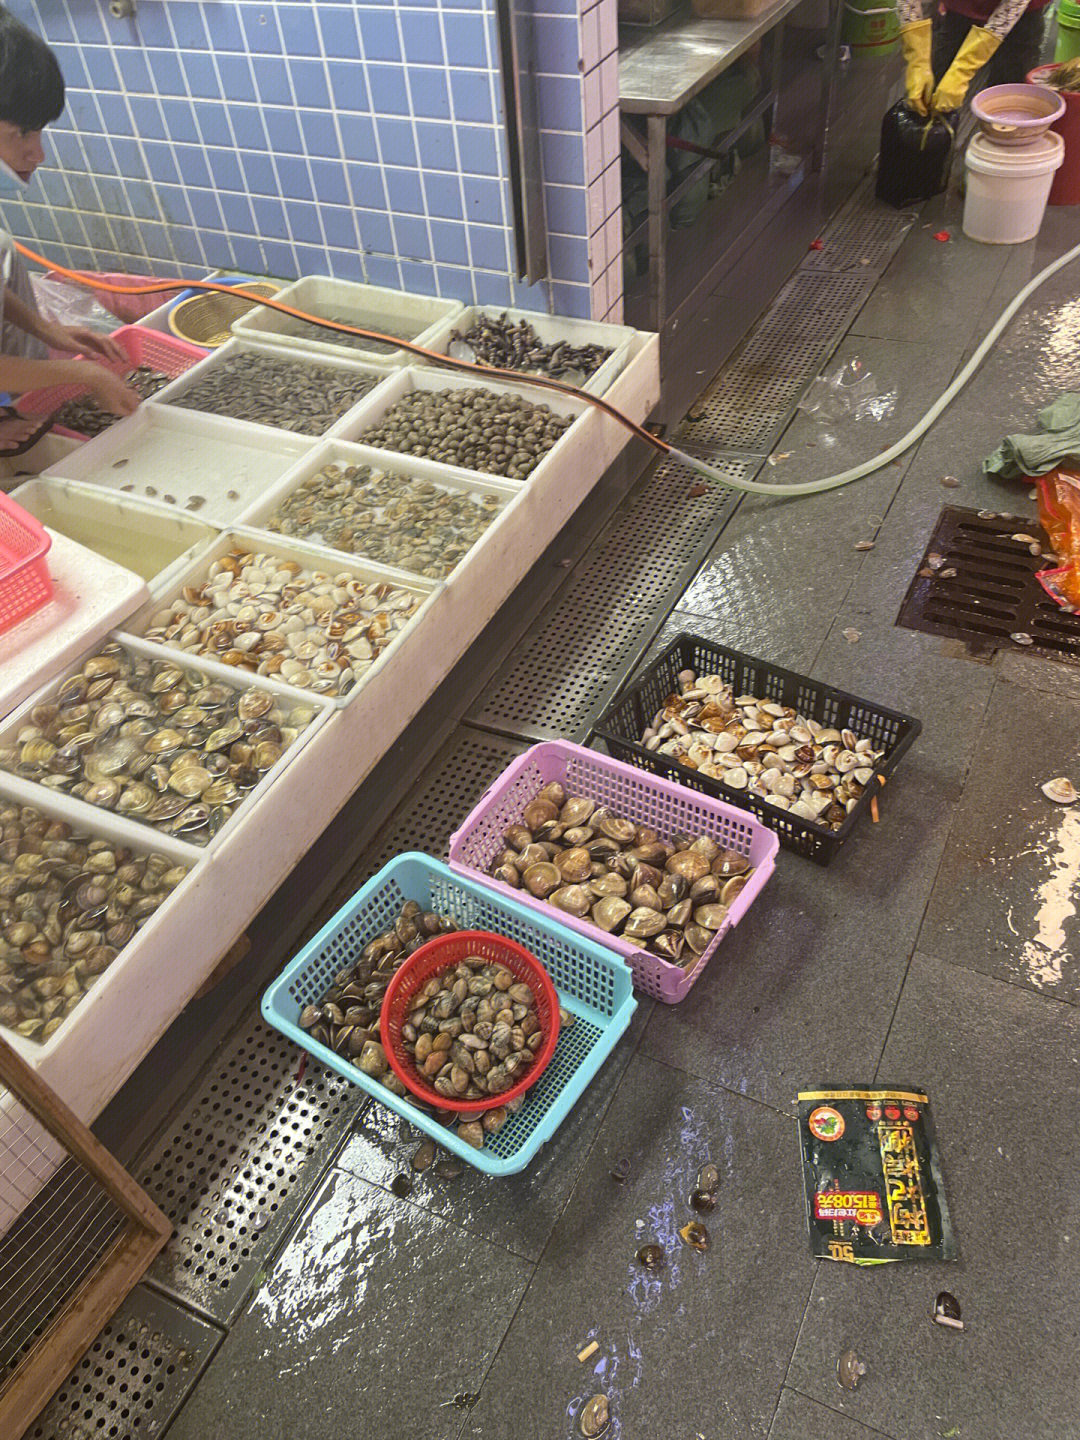 蛇口海鲜市场图片